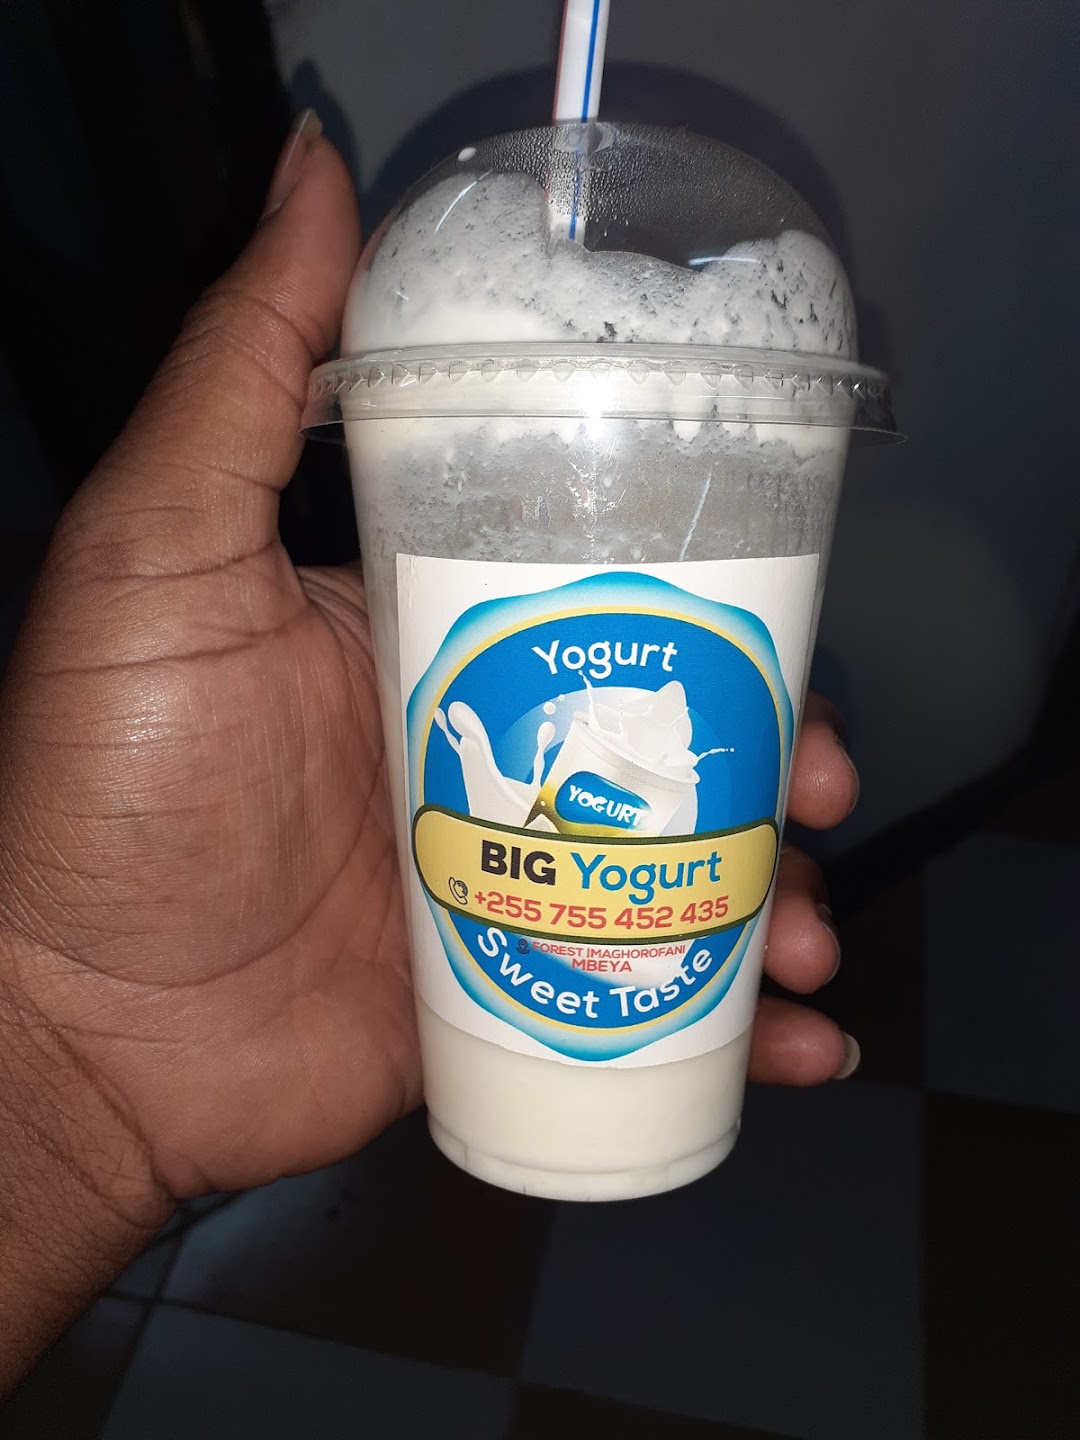 Big yogurt